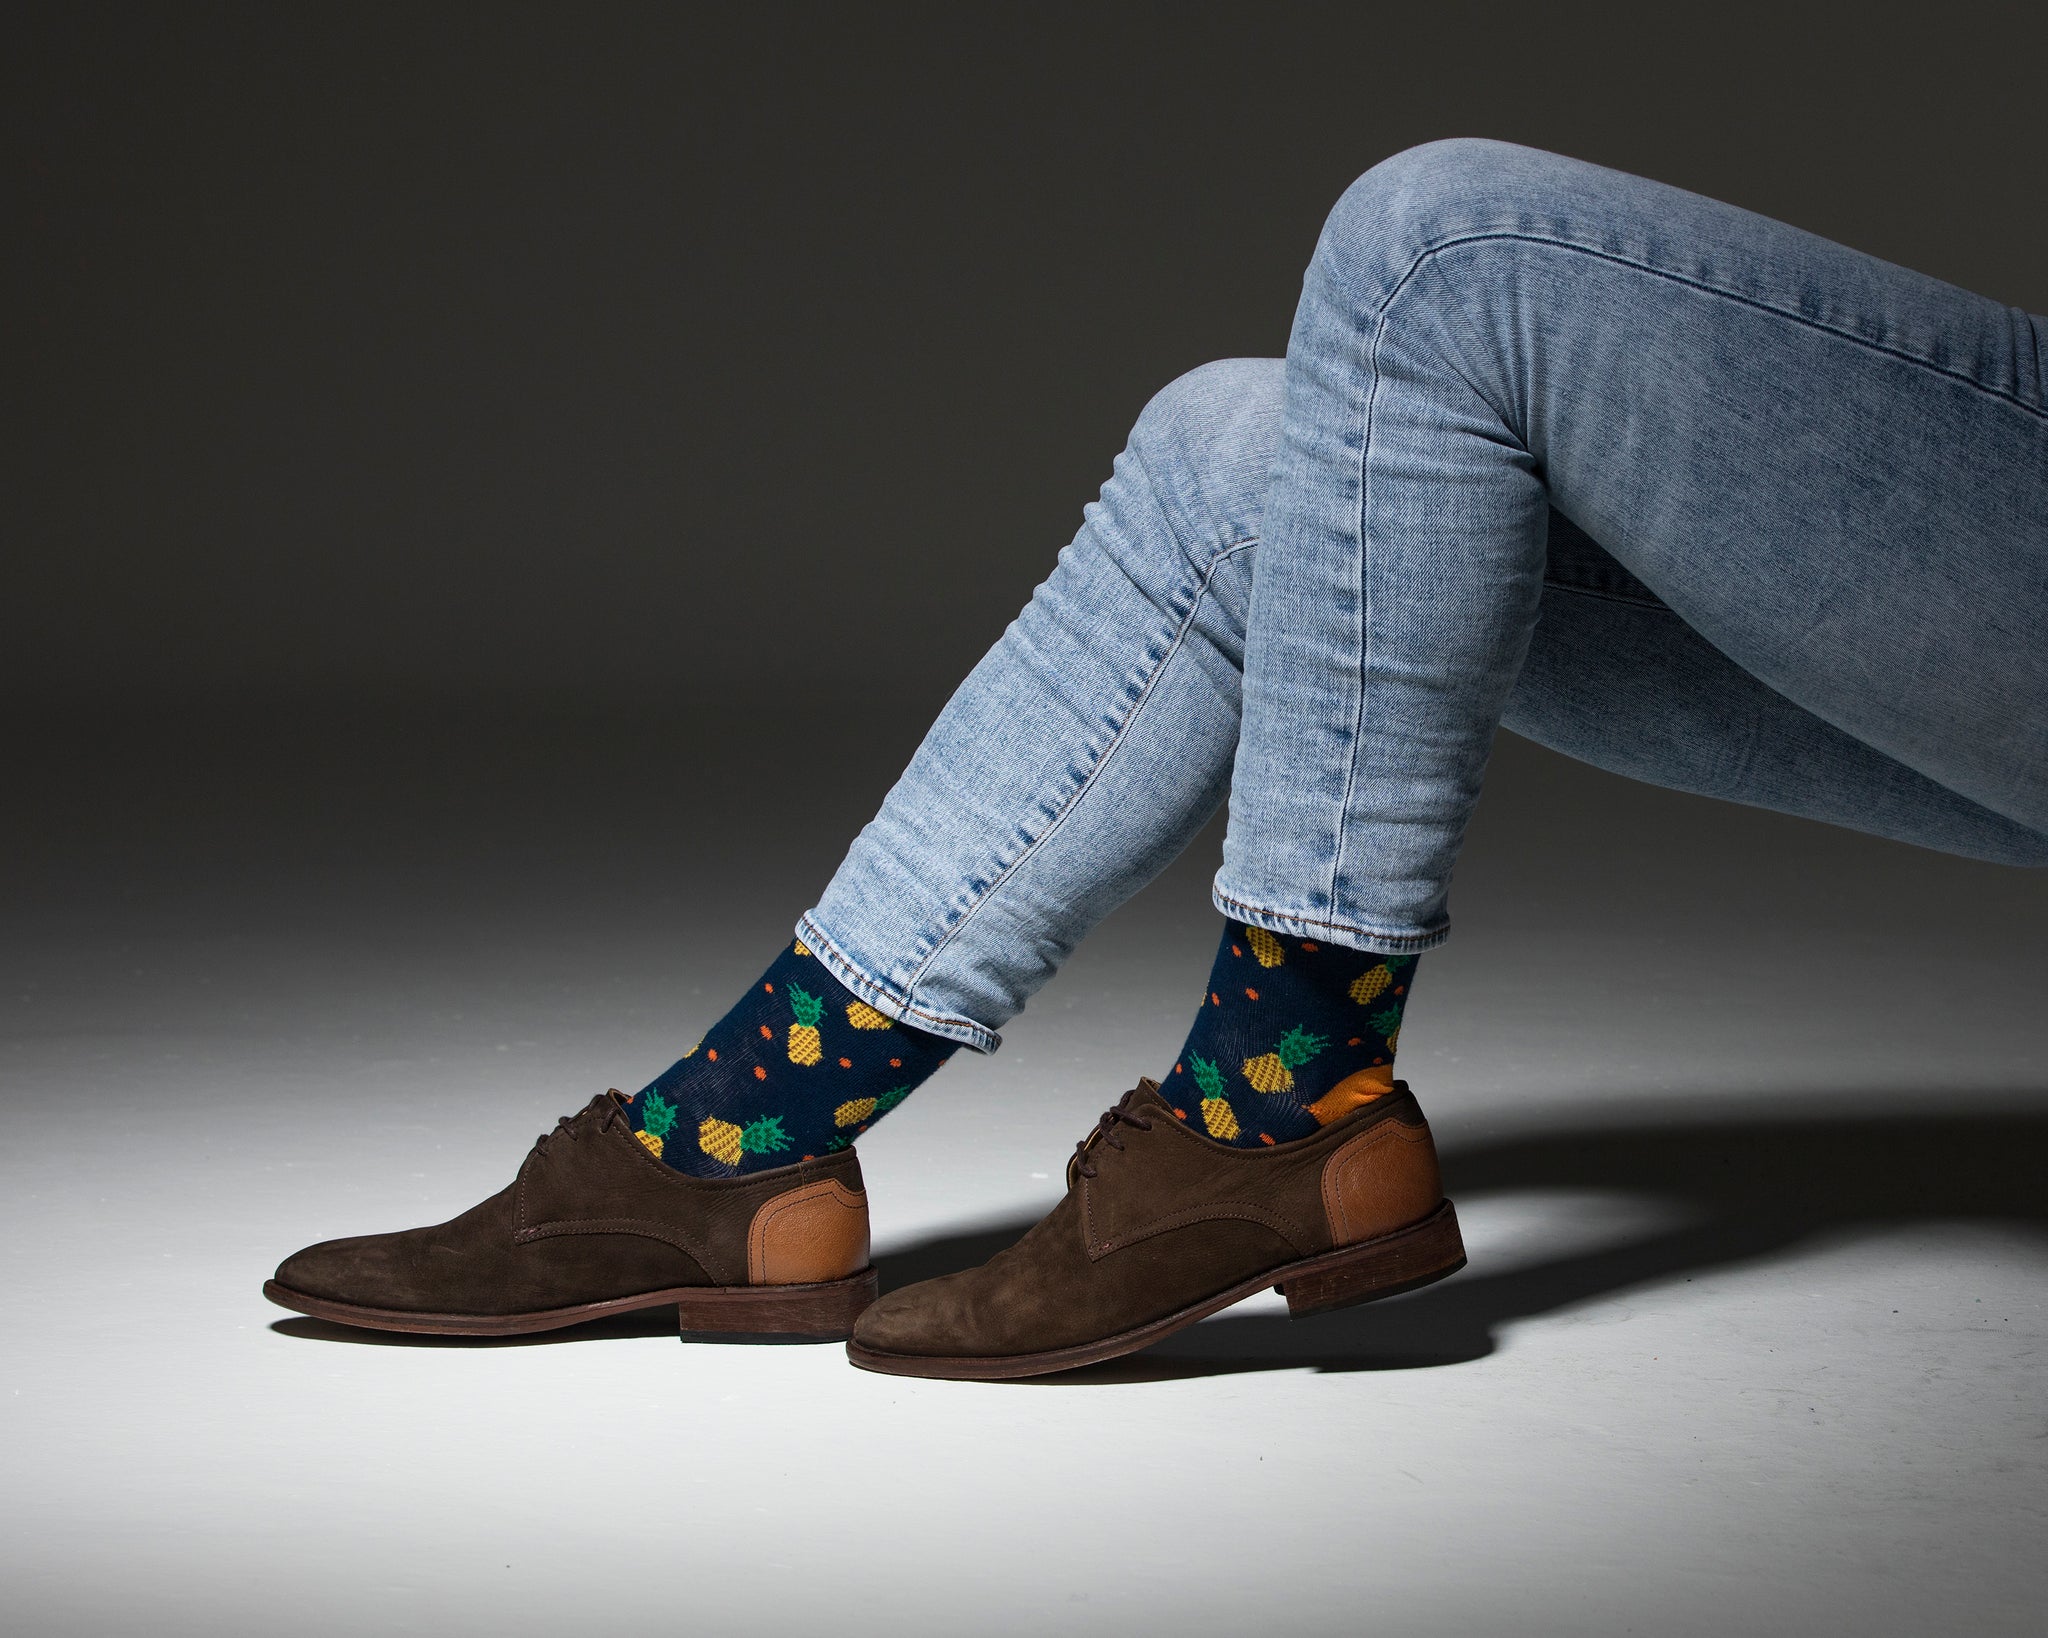 Men's Pineapple Socks